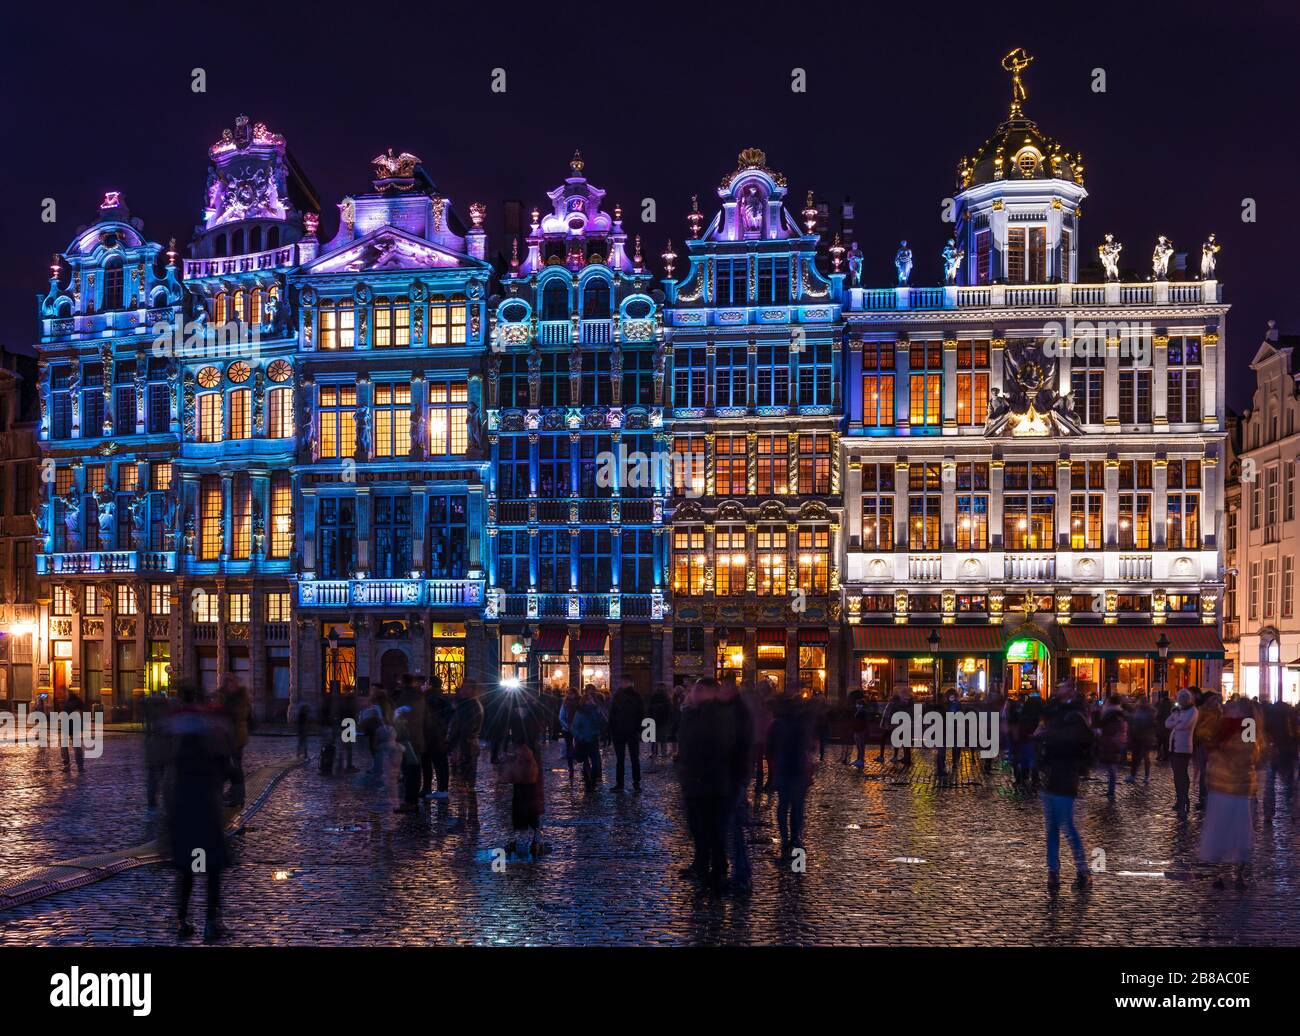 Personnes appréciant le spectacle de lumière sur la Grand place ou la place principale de Bruxelles en hiver avec ses maisons de guilde et l'architecture, Belgique. Banque D'Images